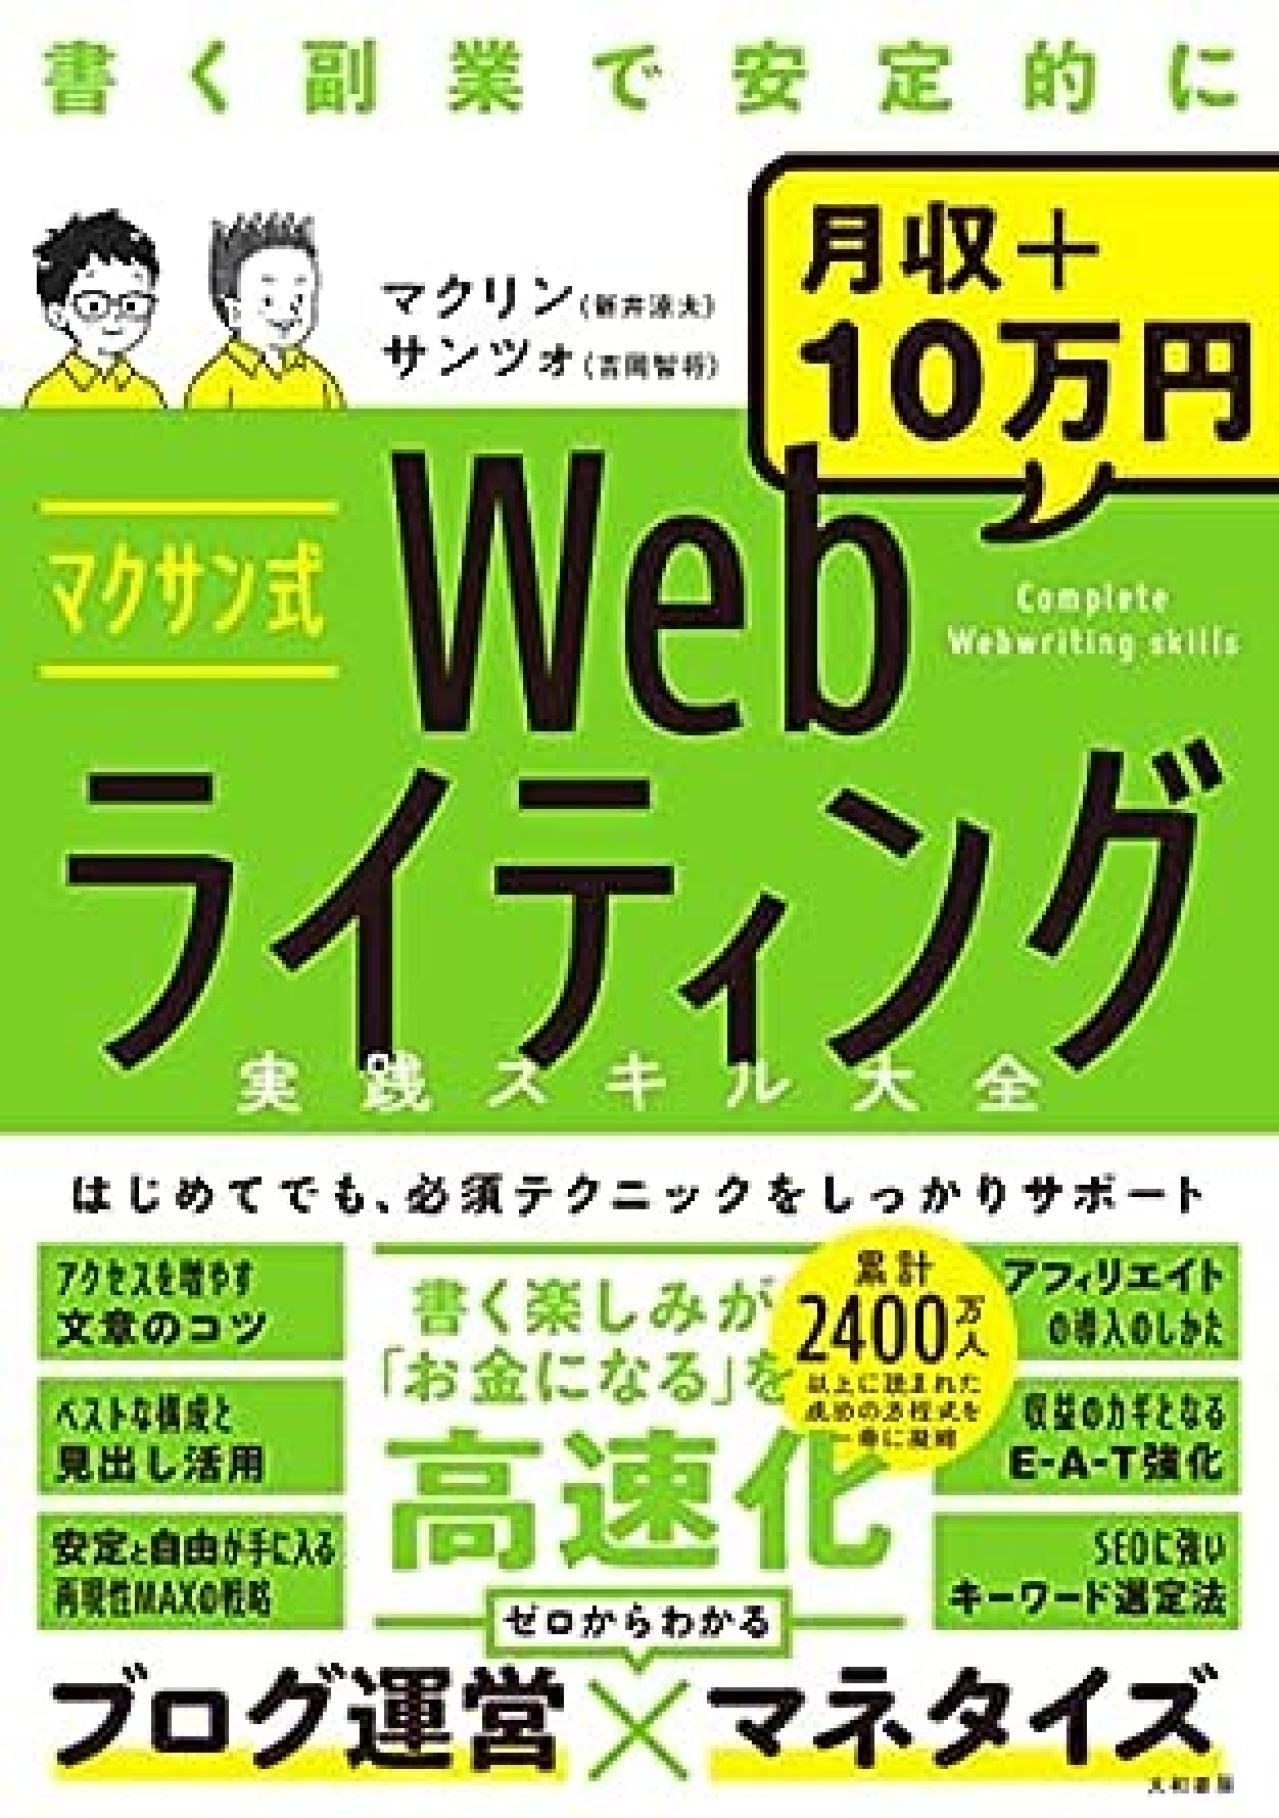 3. マクサン式Webライティング実践スキル大全